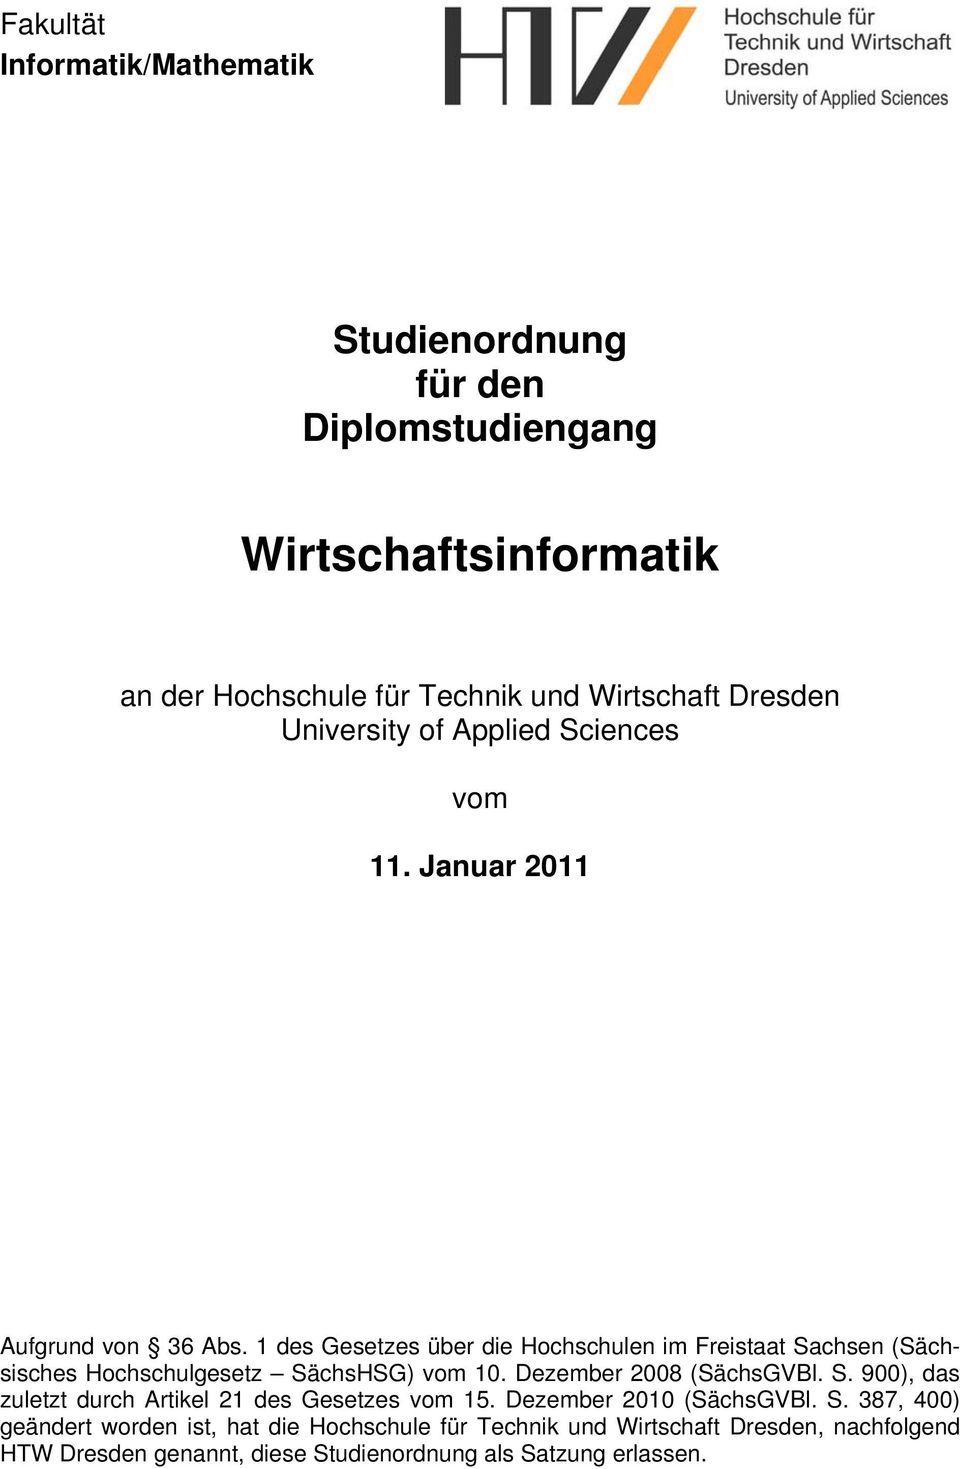 1 des Gesetzes über die Hochschulen im Freistaat Sachsen (Sächsisches Hochschulgesetz SächsHSG) vom 10. Dezember 2008 (SächsGVBl. S. 900), das zuletzt durch Artikel 21 des Gesetzes vom 15.